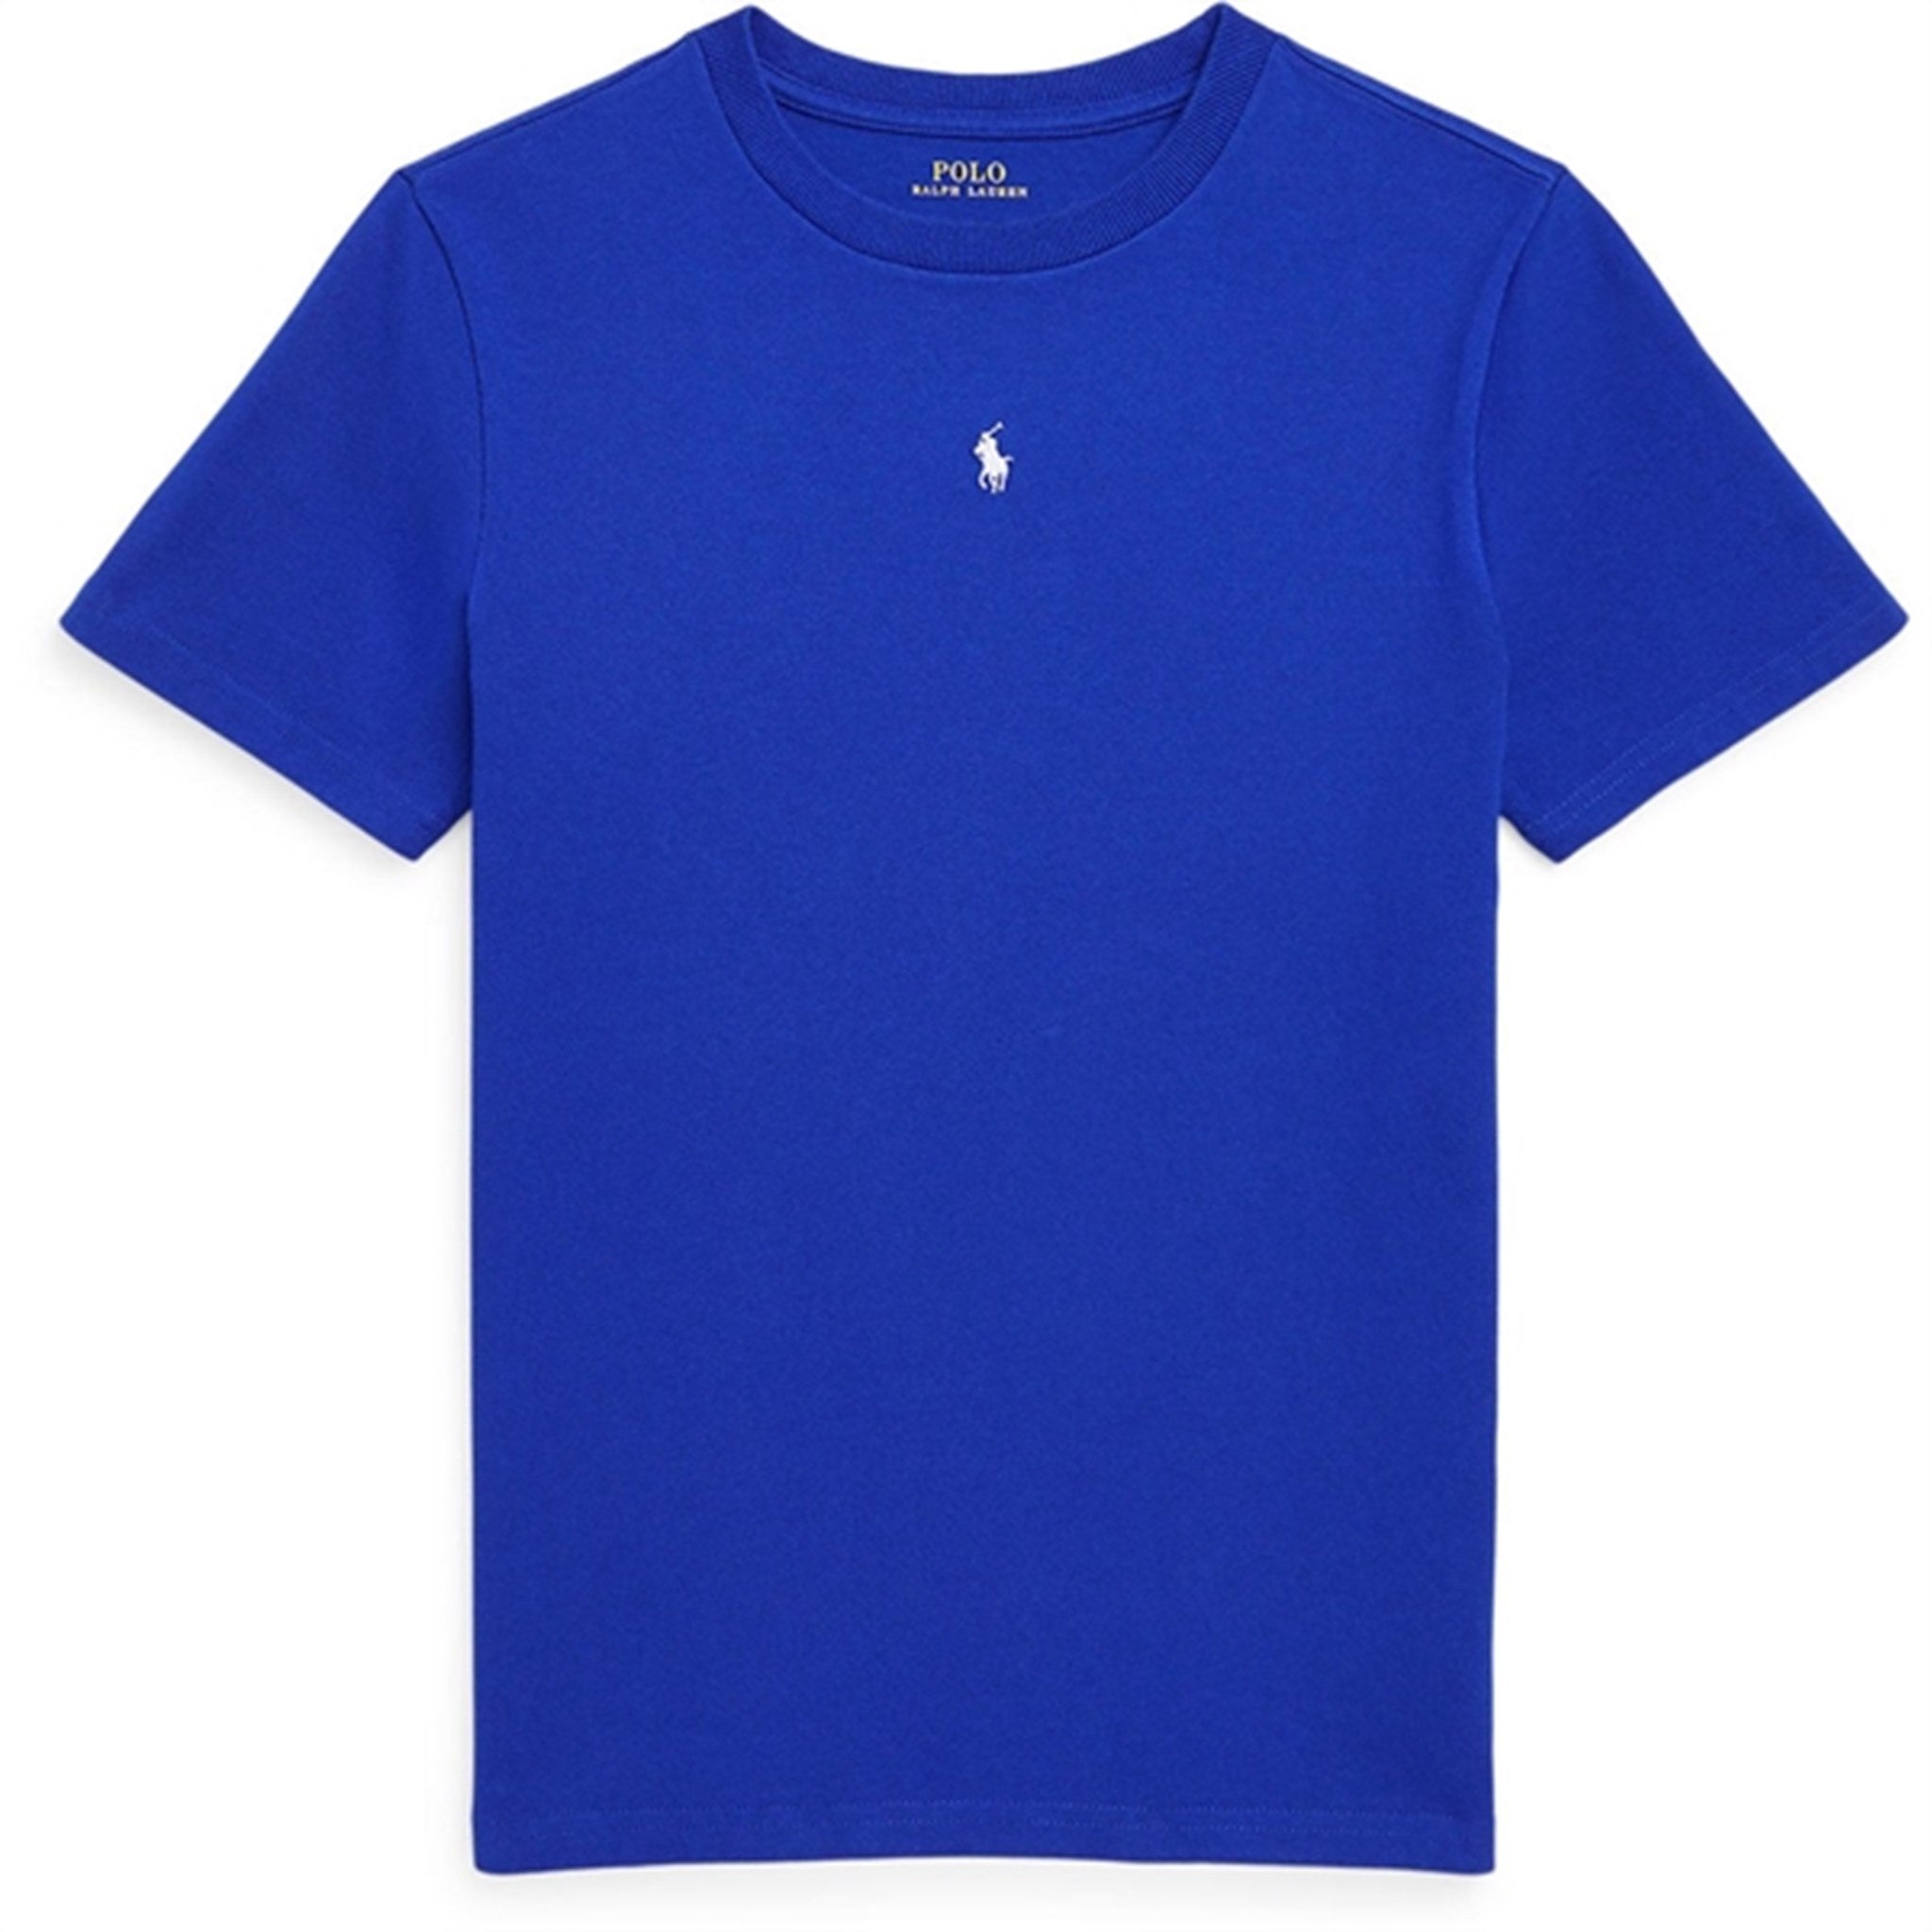 Polo Ralph Lauren Boys T-Shirt Sapphire Star